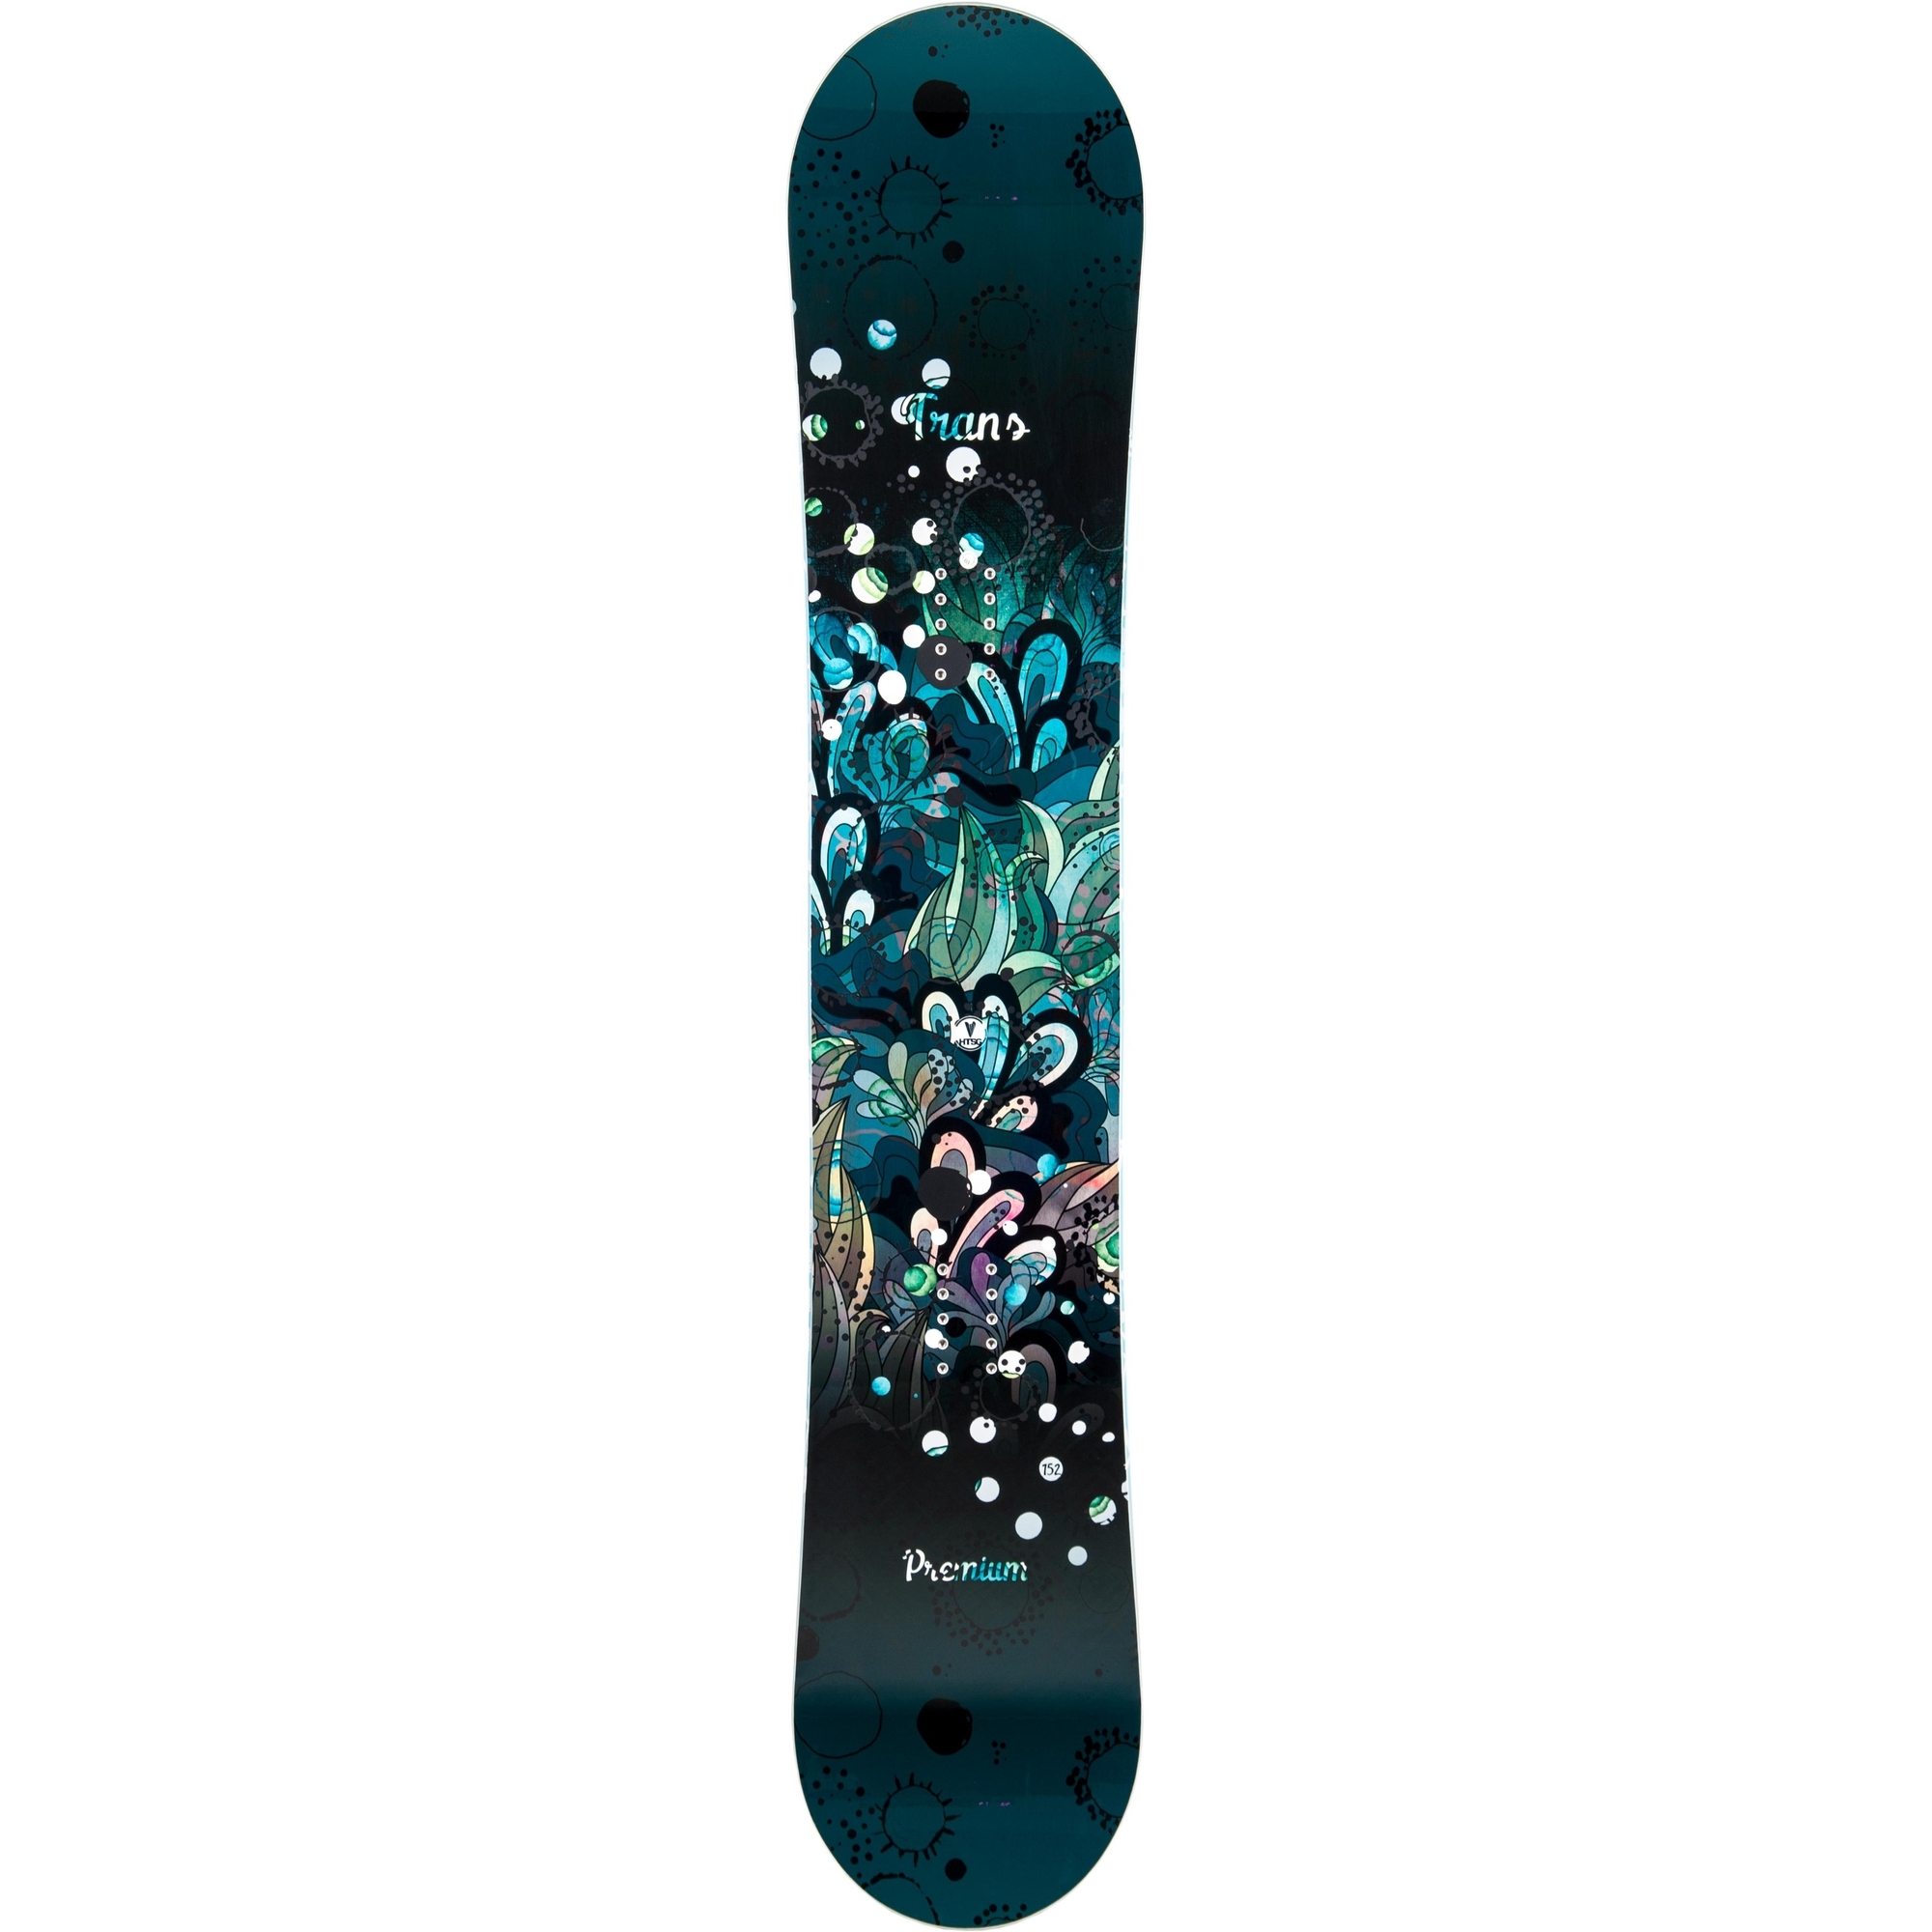 Placa snowboard unisex Trans Premium Variorocker Negru 2019 imagine